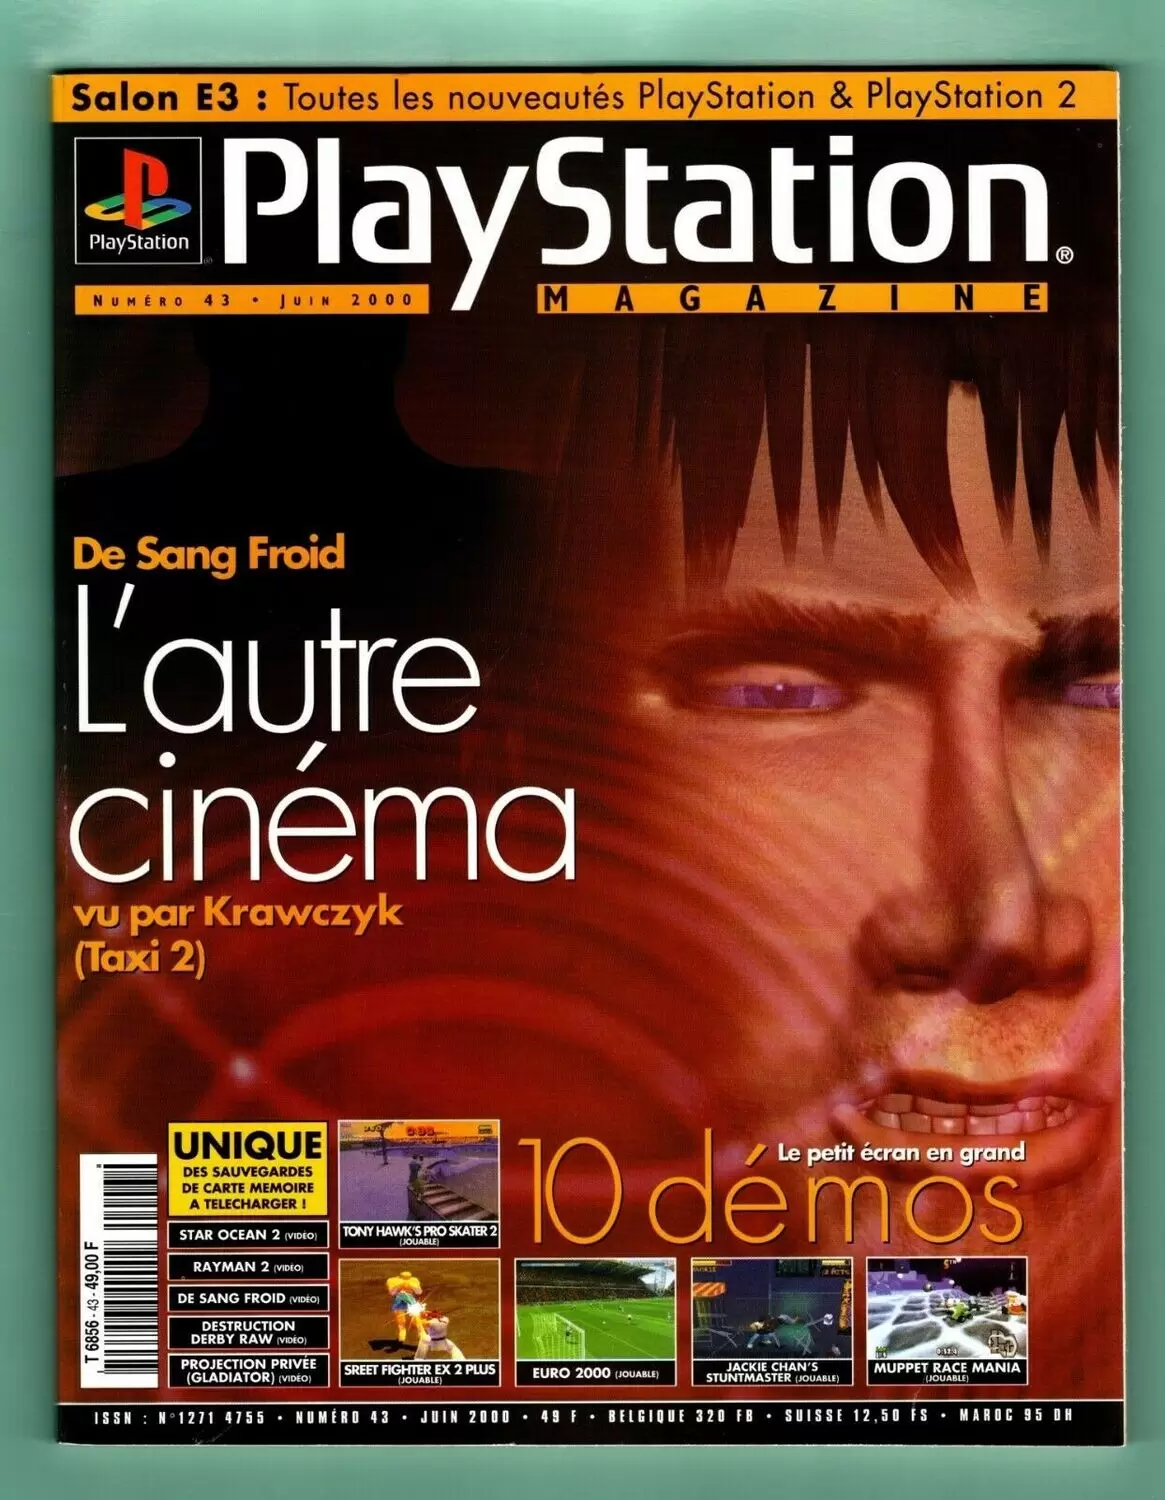 Playstation Magazine - Playstation Magazine #43